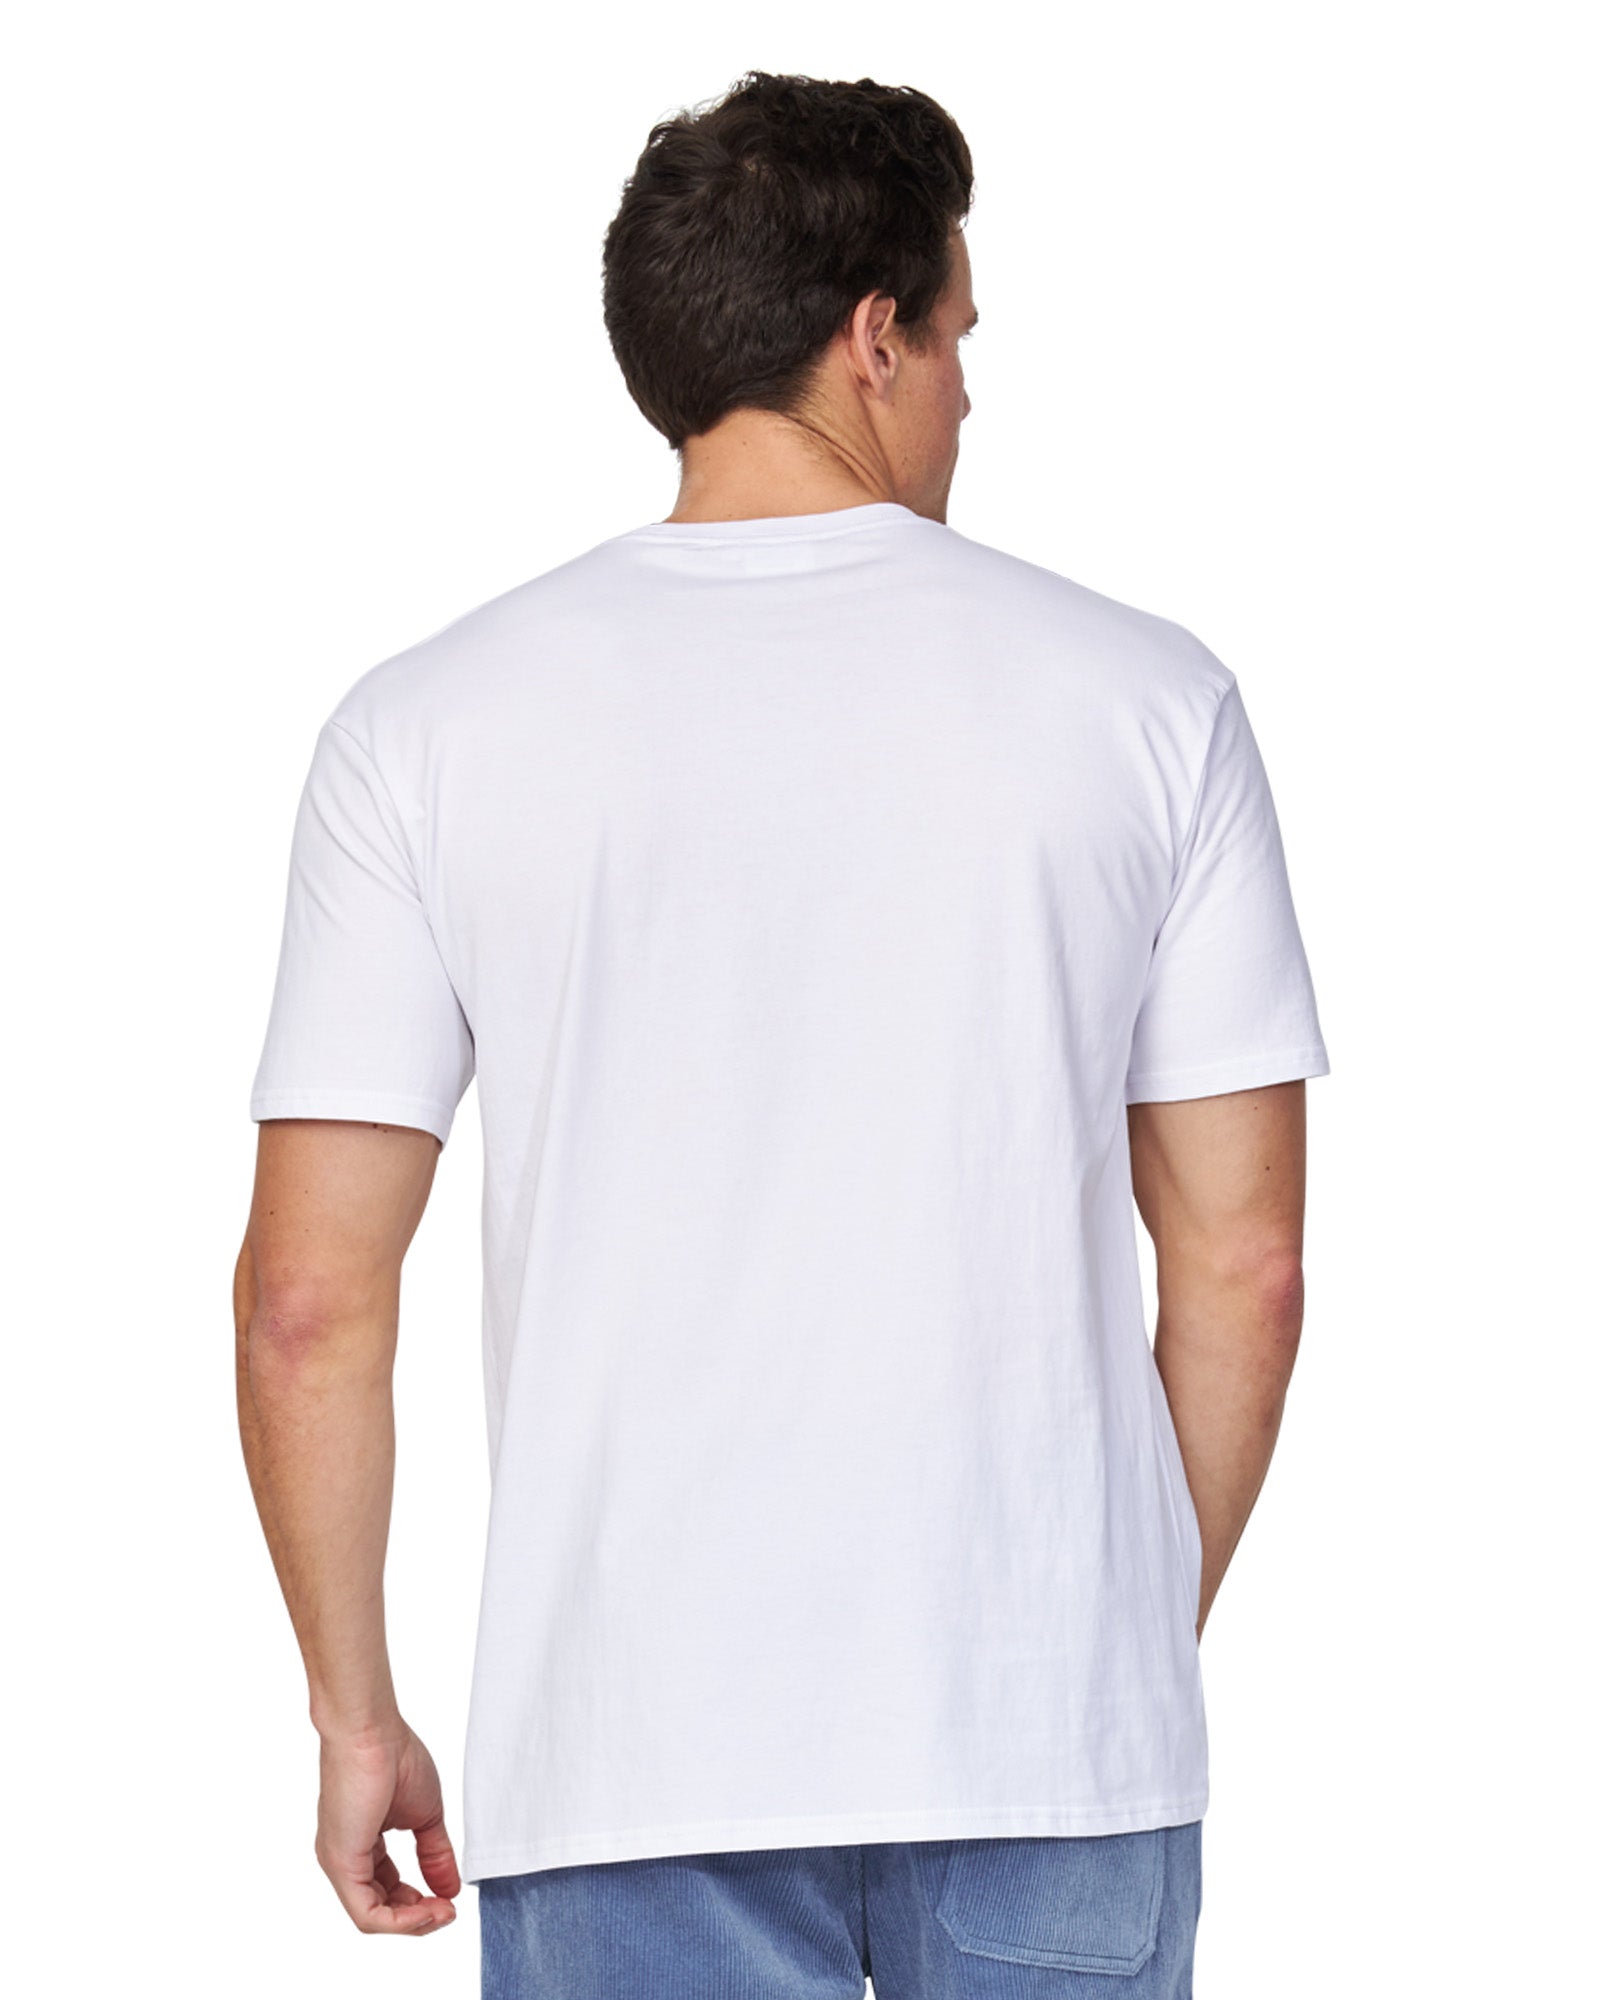 Mens - T-Shirt - Staple Tee - White